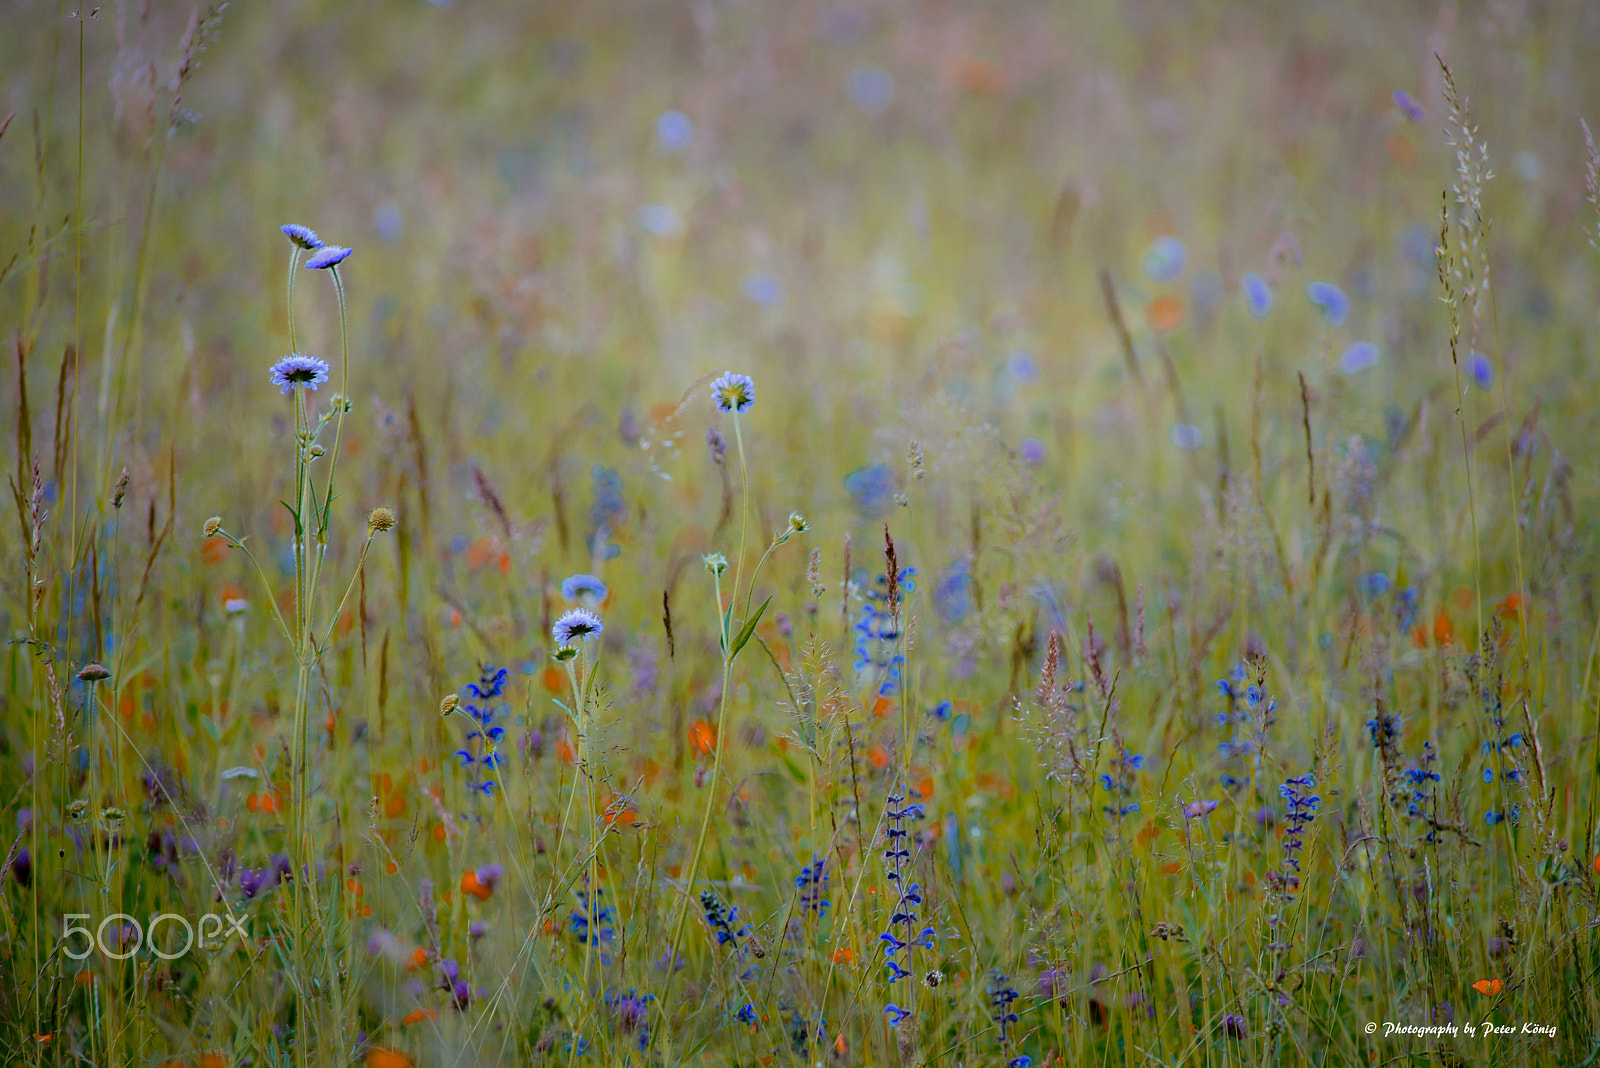 Nikon D600 + AF Nikkor 300mm f/4 IF-ED sample photo. Flower and grasses photography